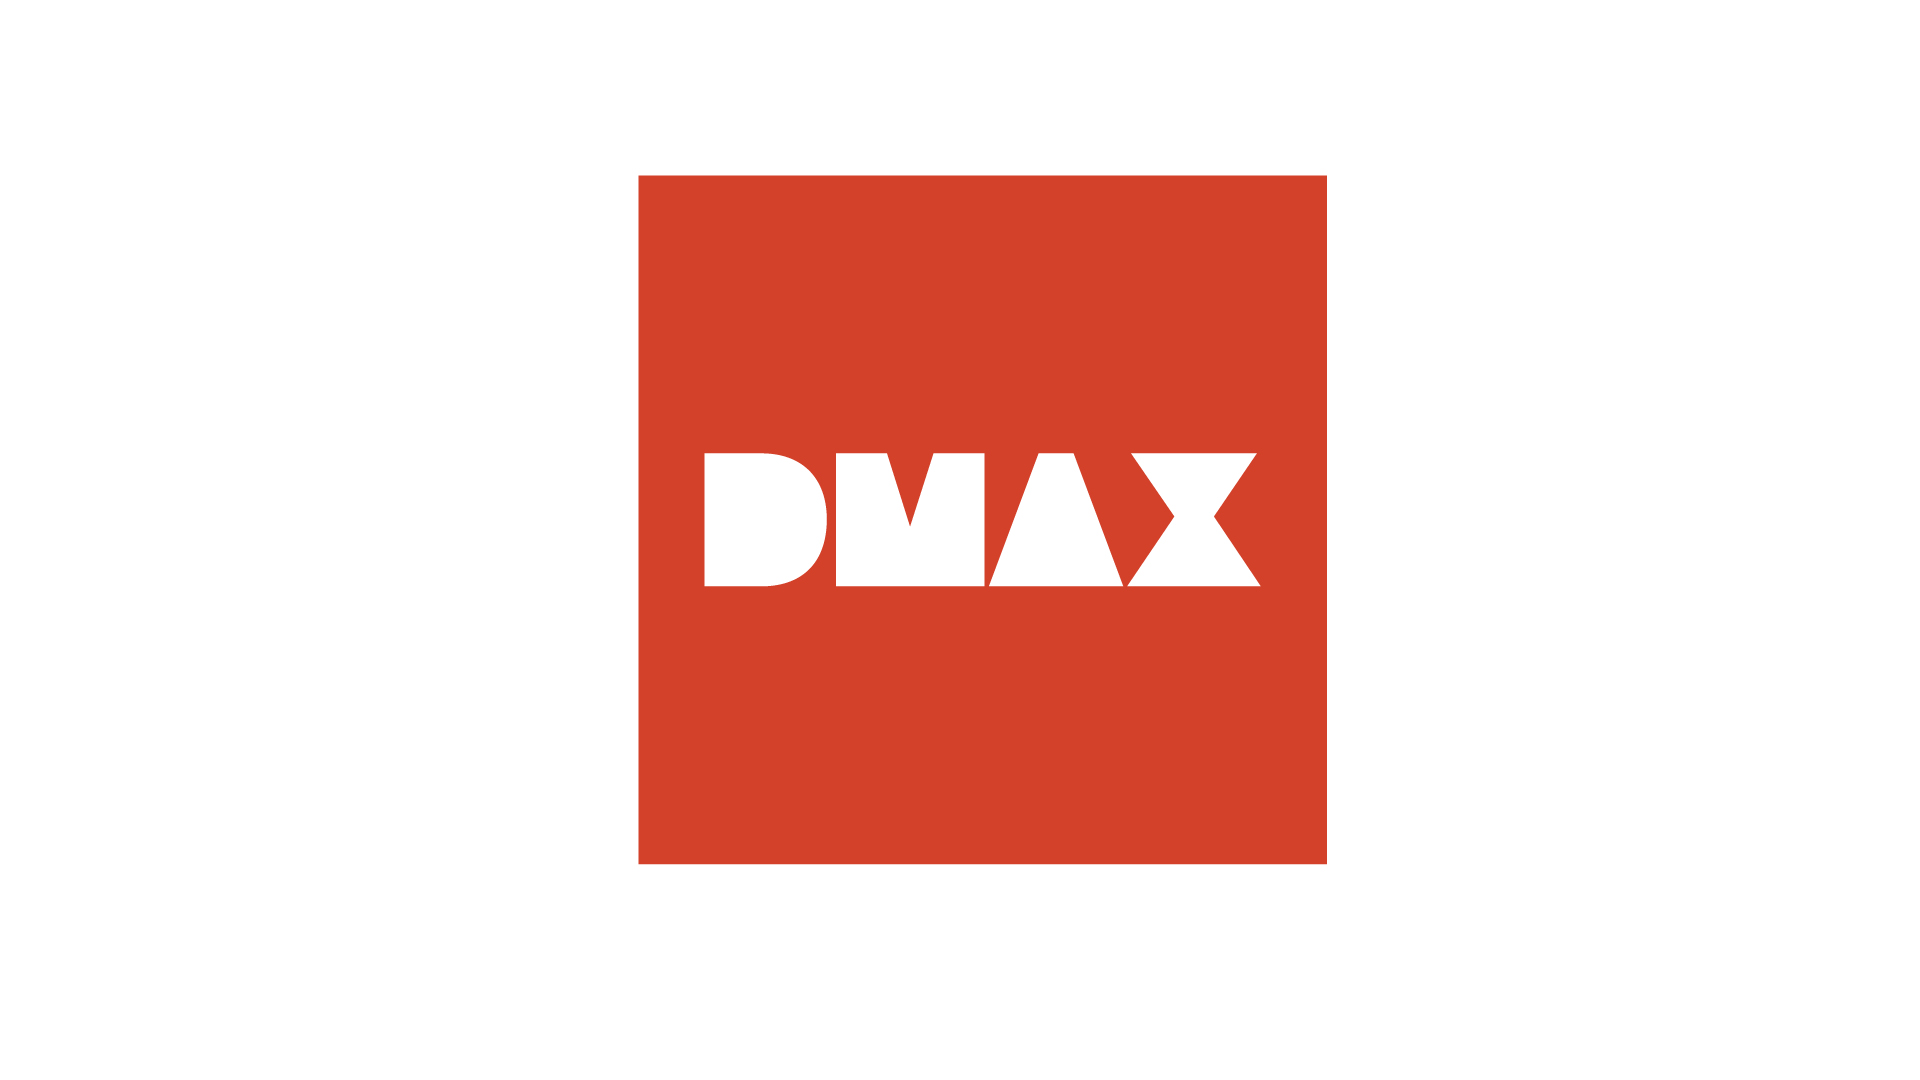 DMAX-LOGO paprika